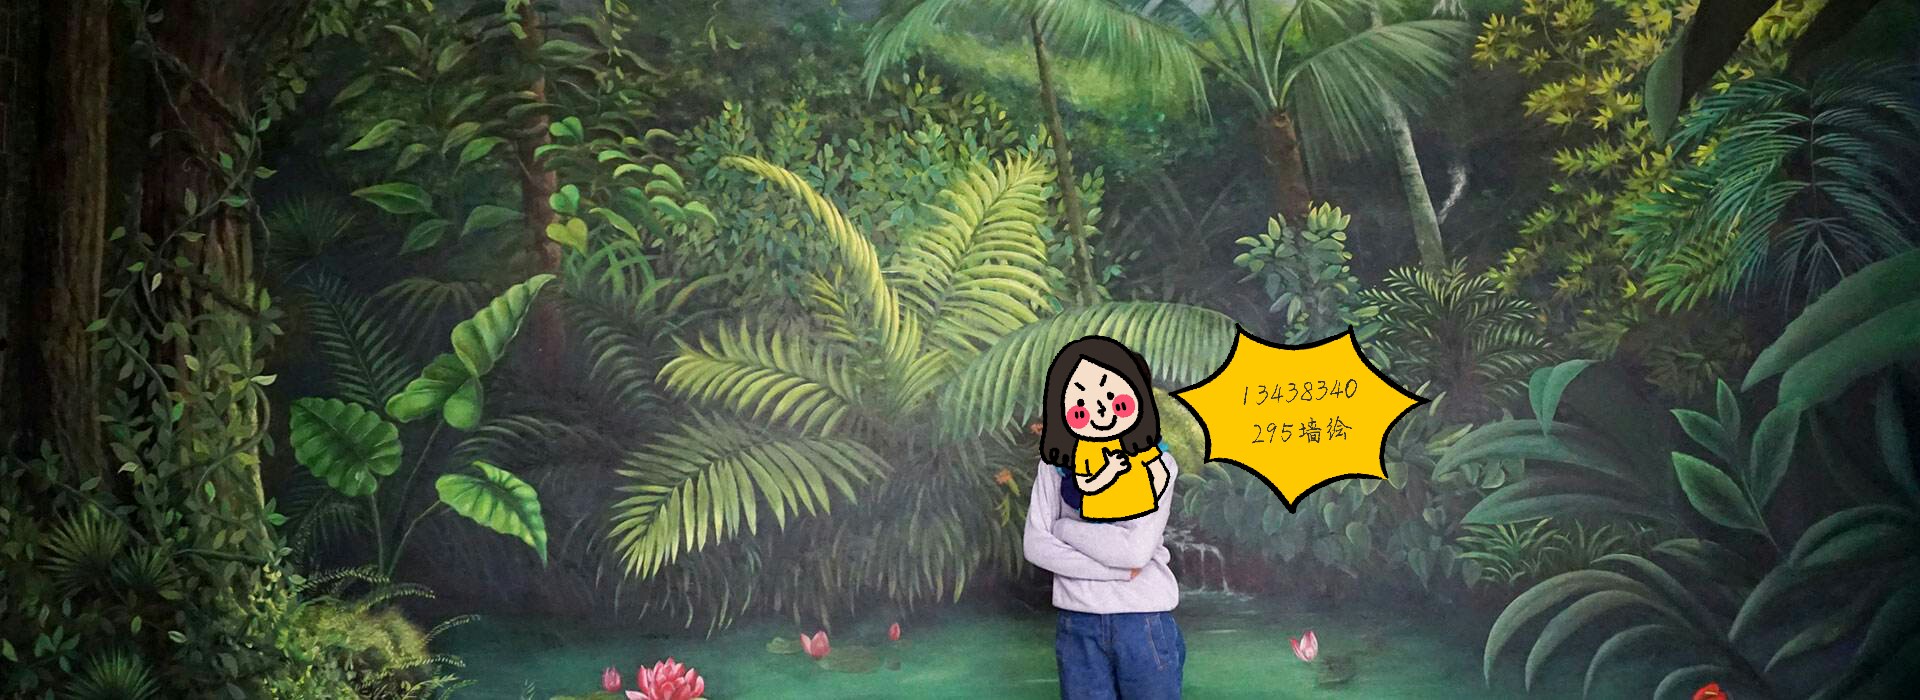 植物墙绘,热带雨林插画,写实植物墙画